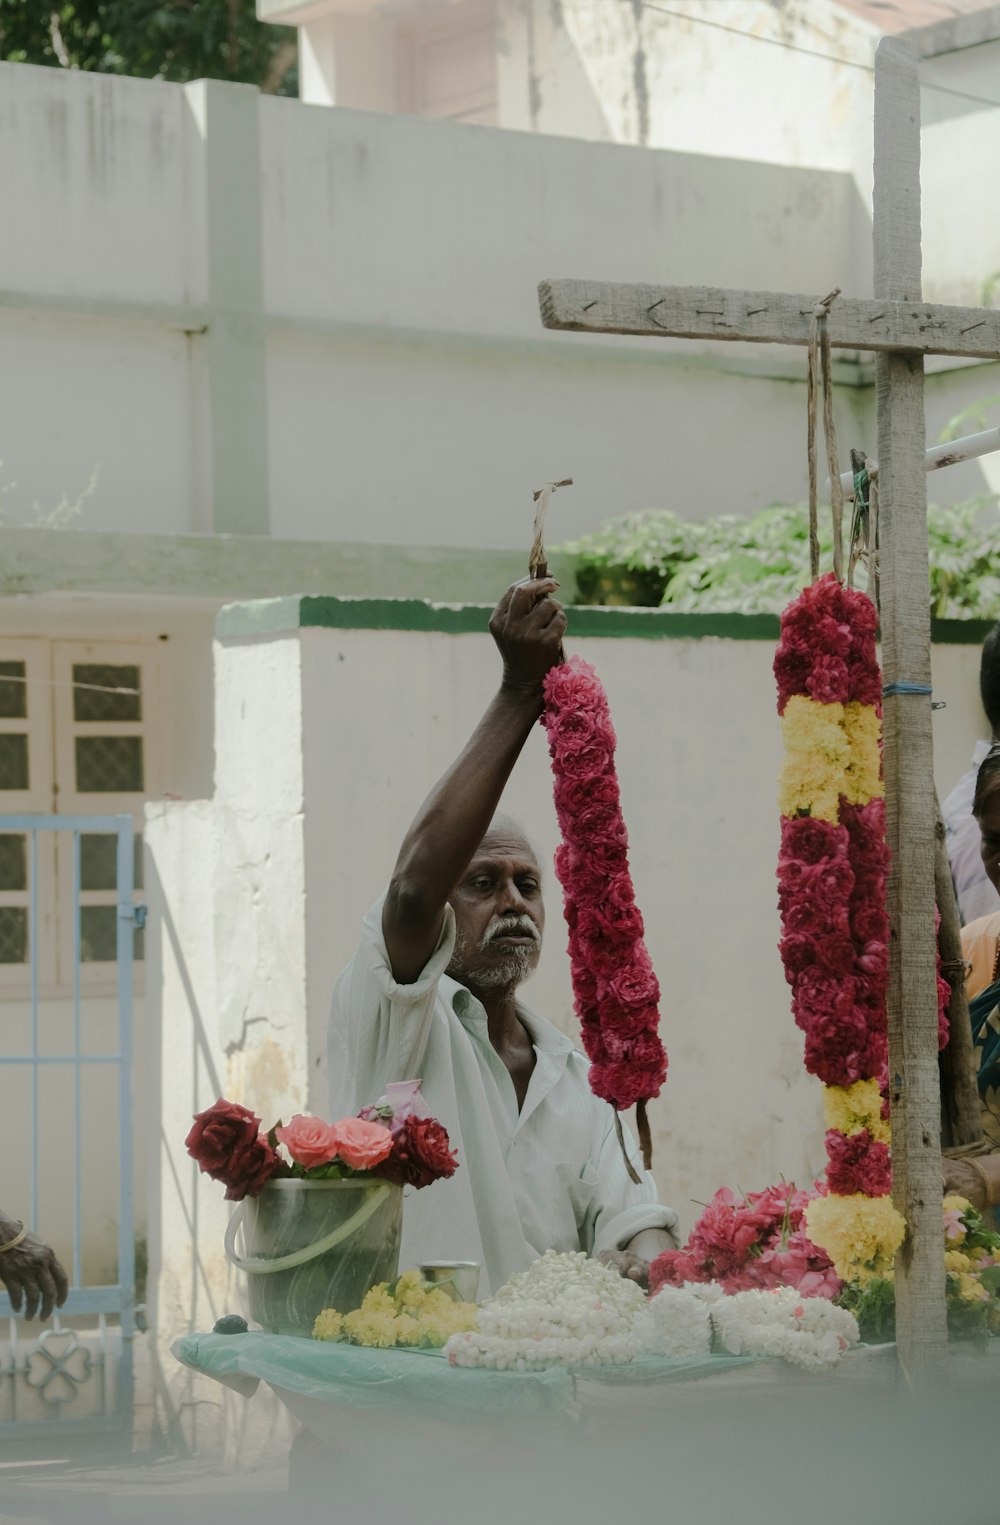 a man is holding up a flower arrangement